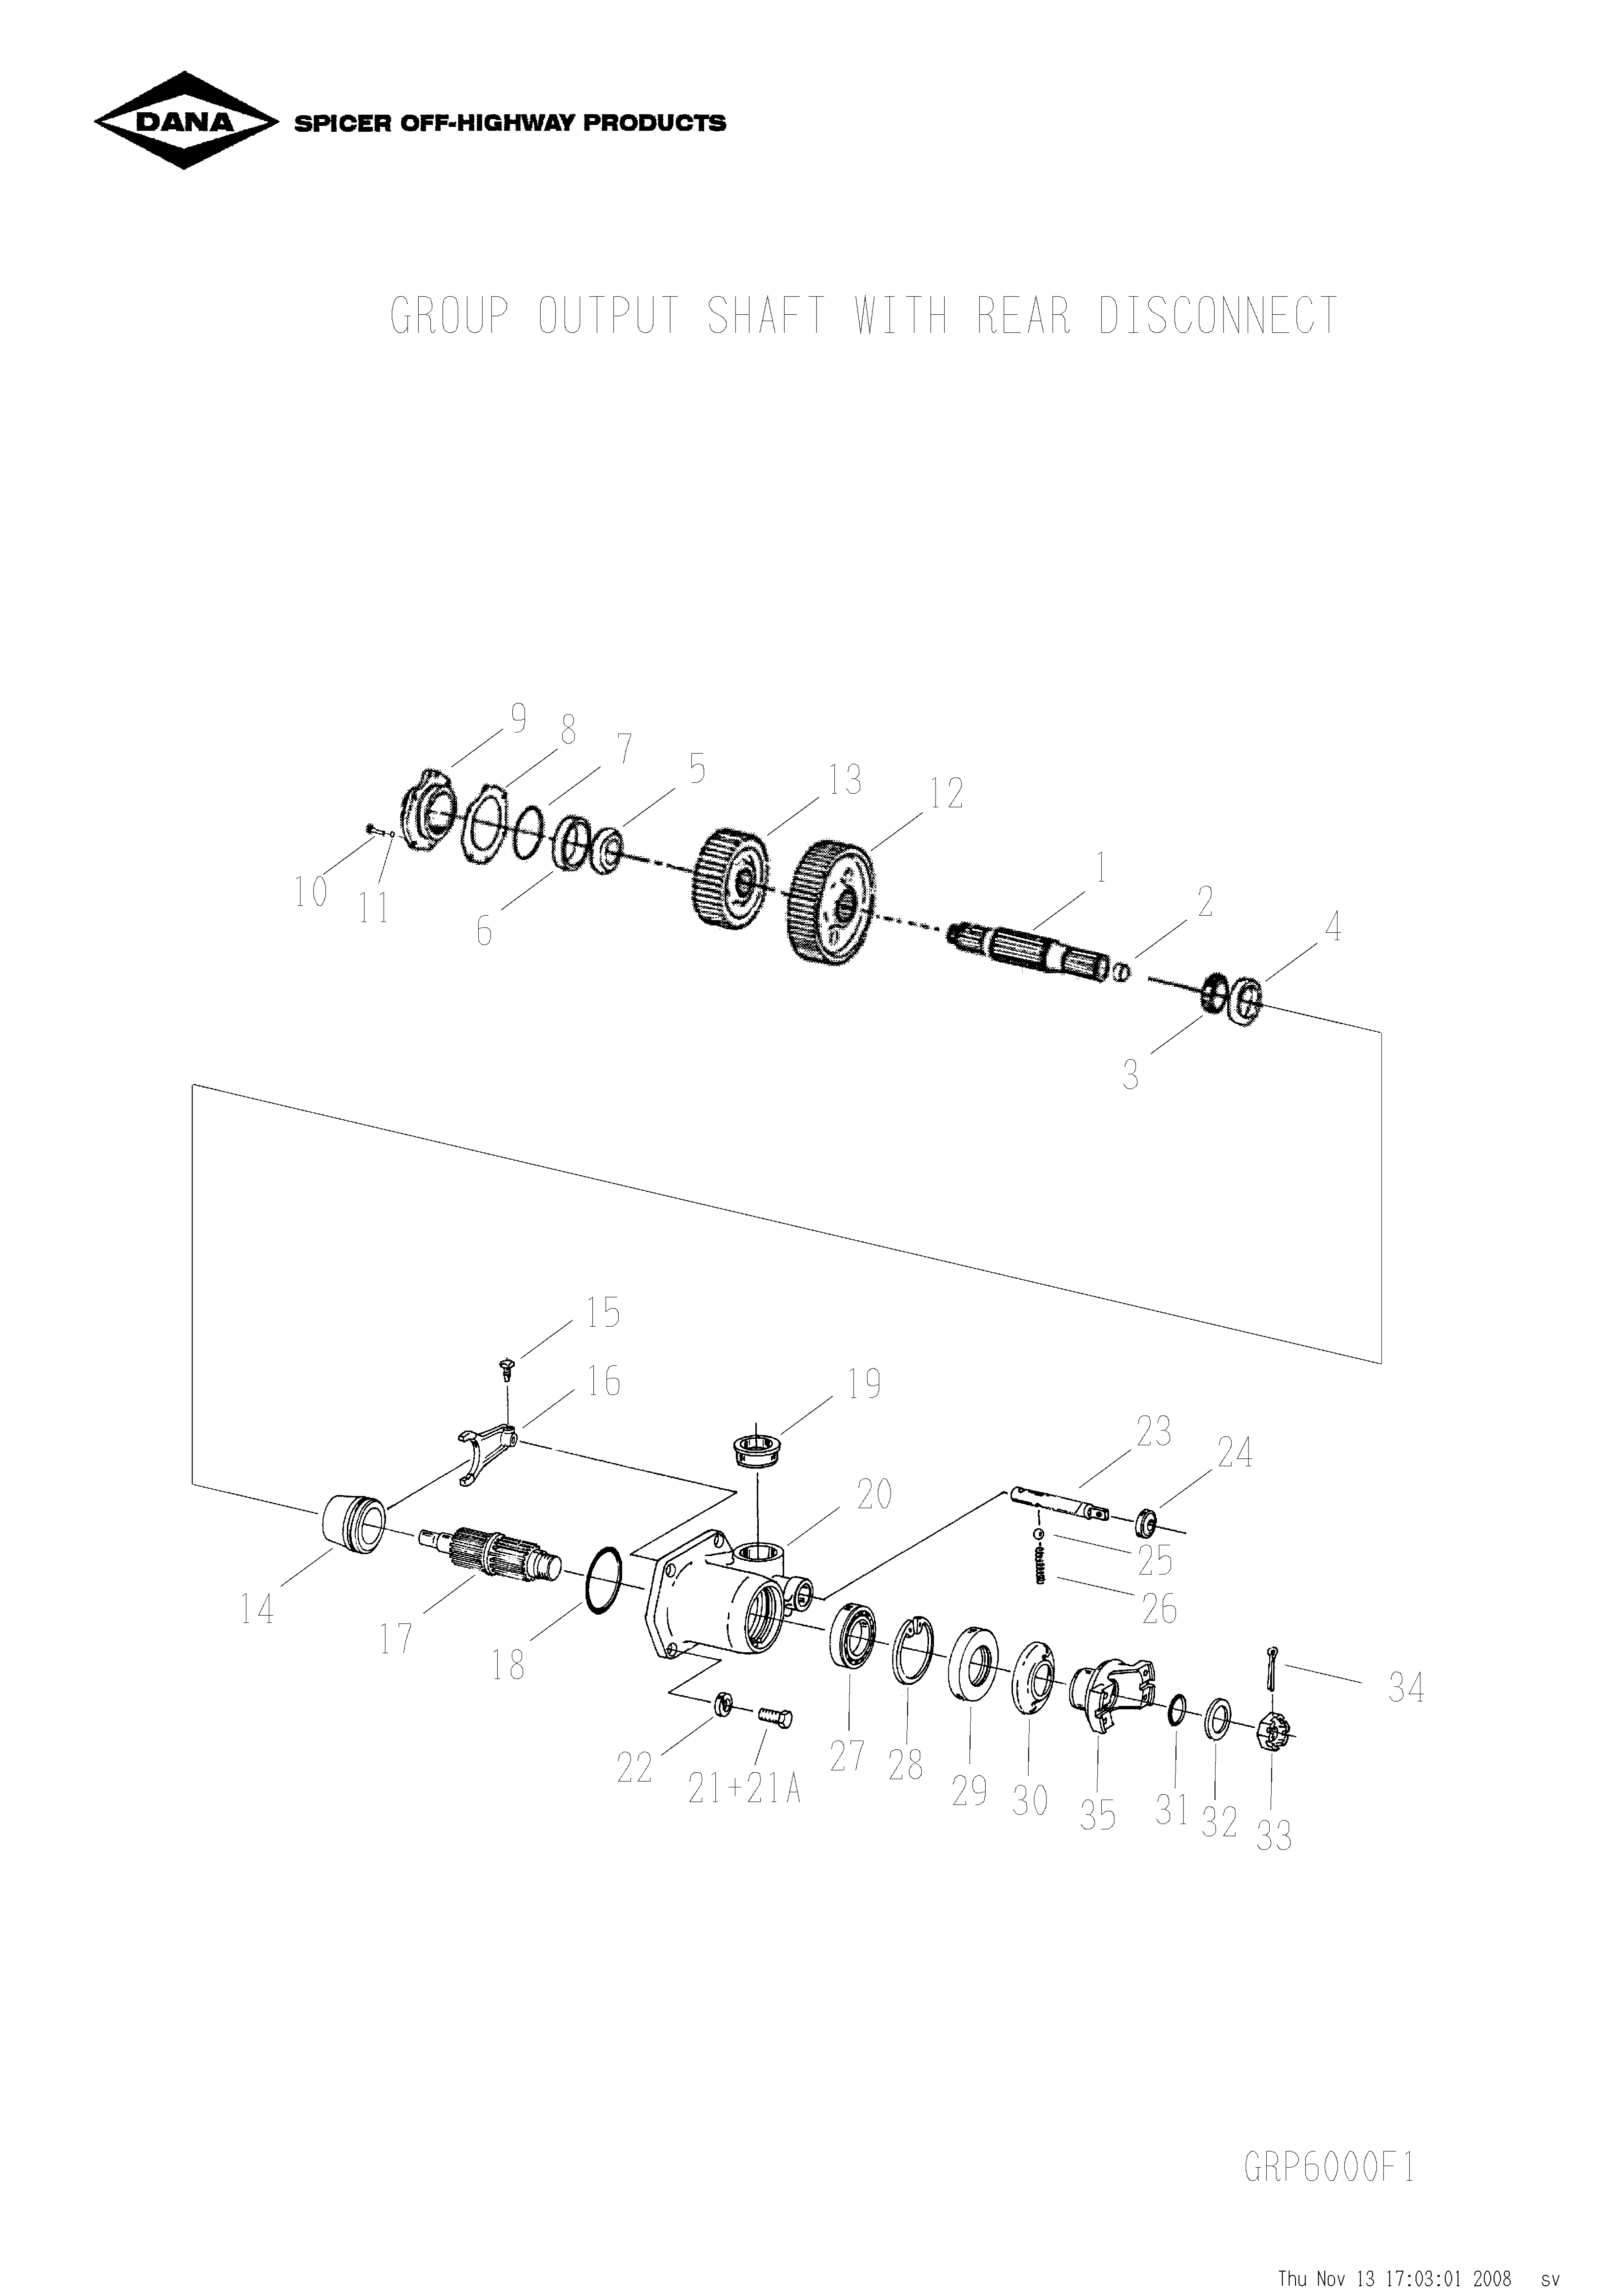 drawing for SCHOEMA, SCHOETTLER MASCHINENFABRIK K24.000125 - OIL SEAL (figure 1)